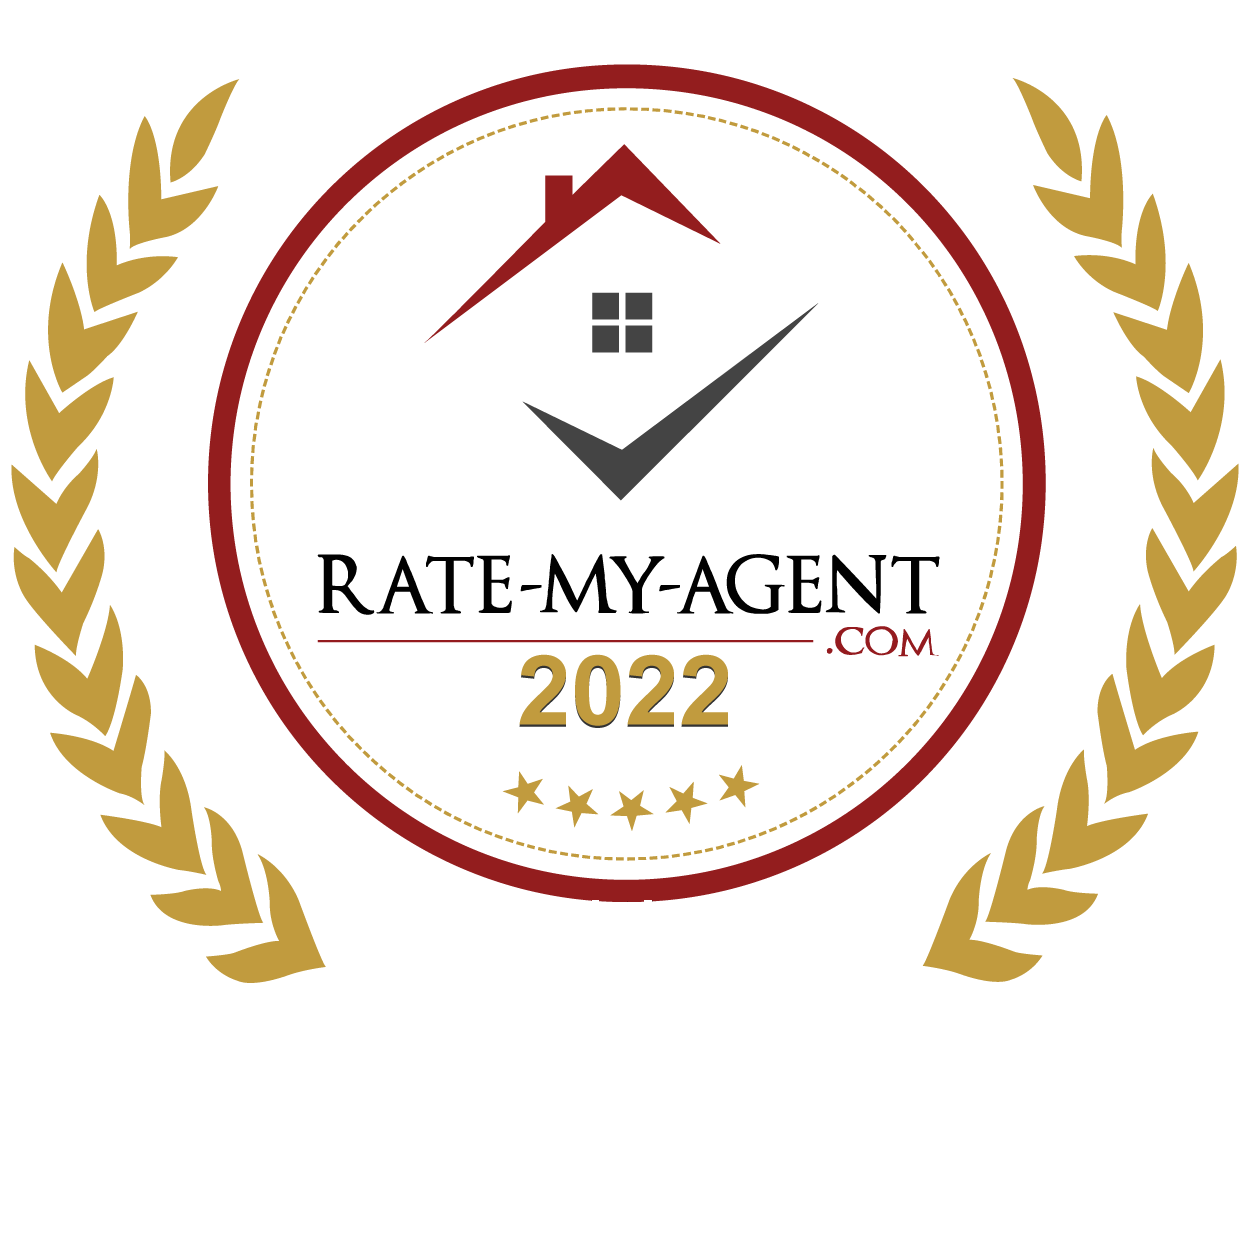 Rate-My-Agent.com